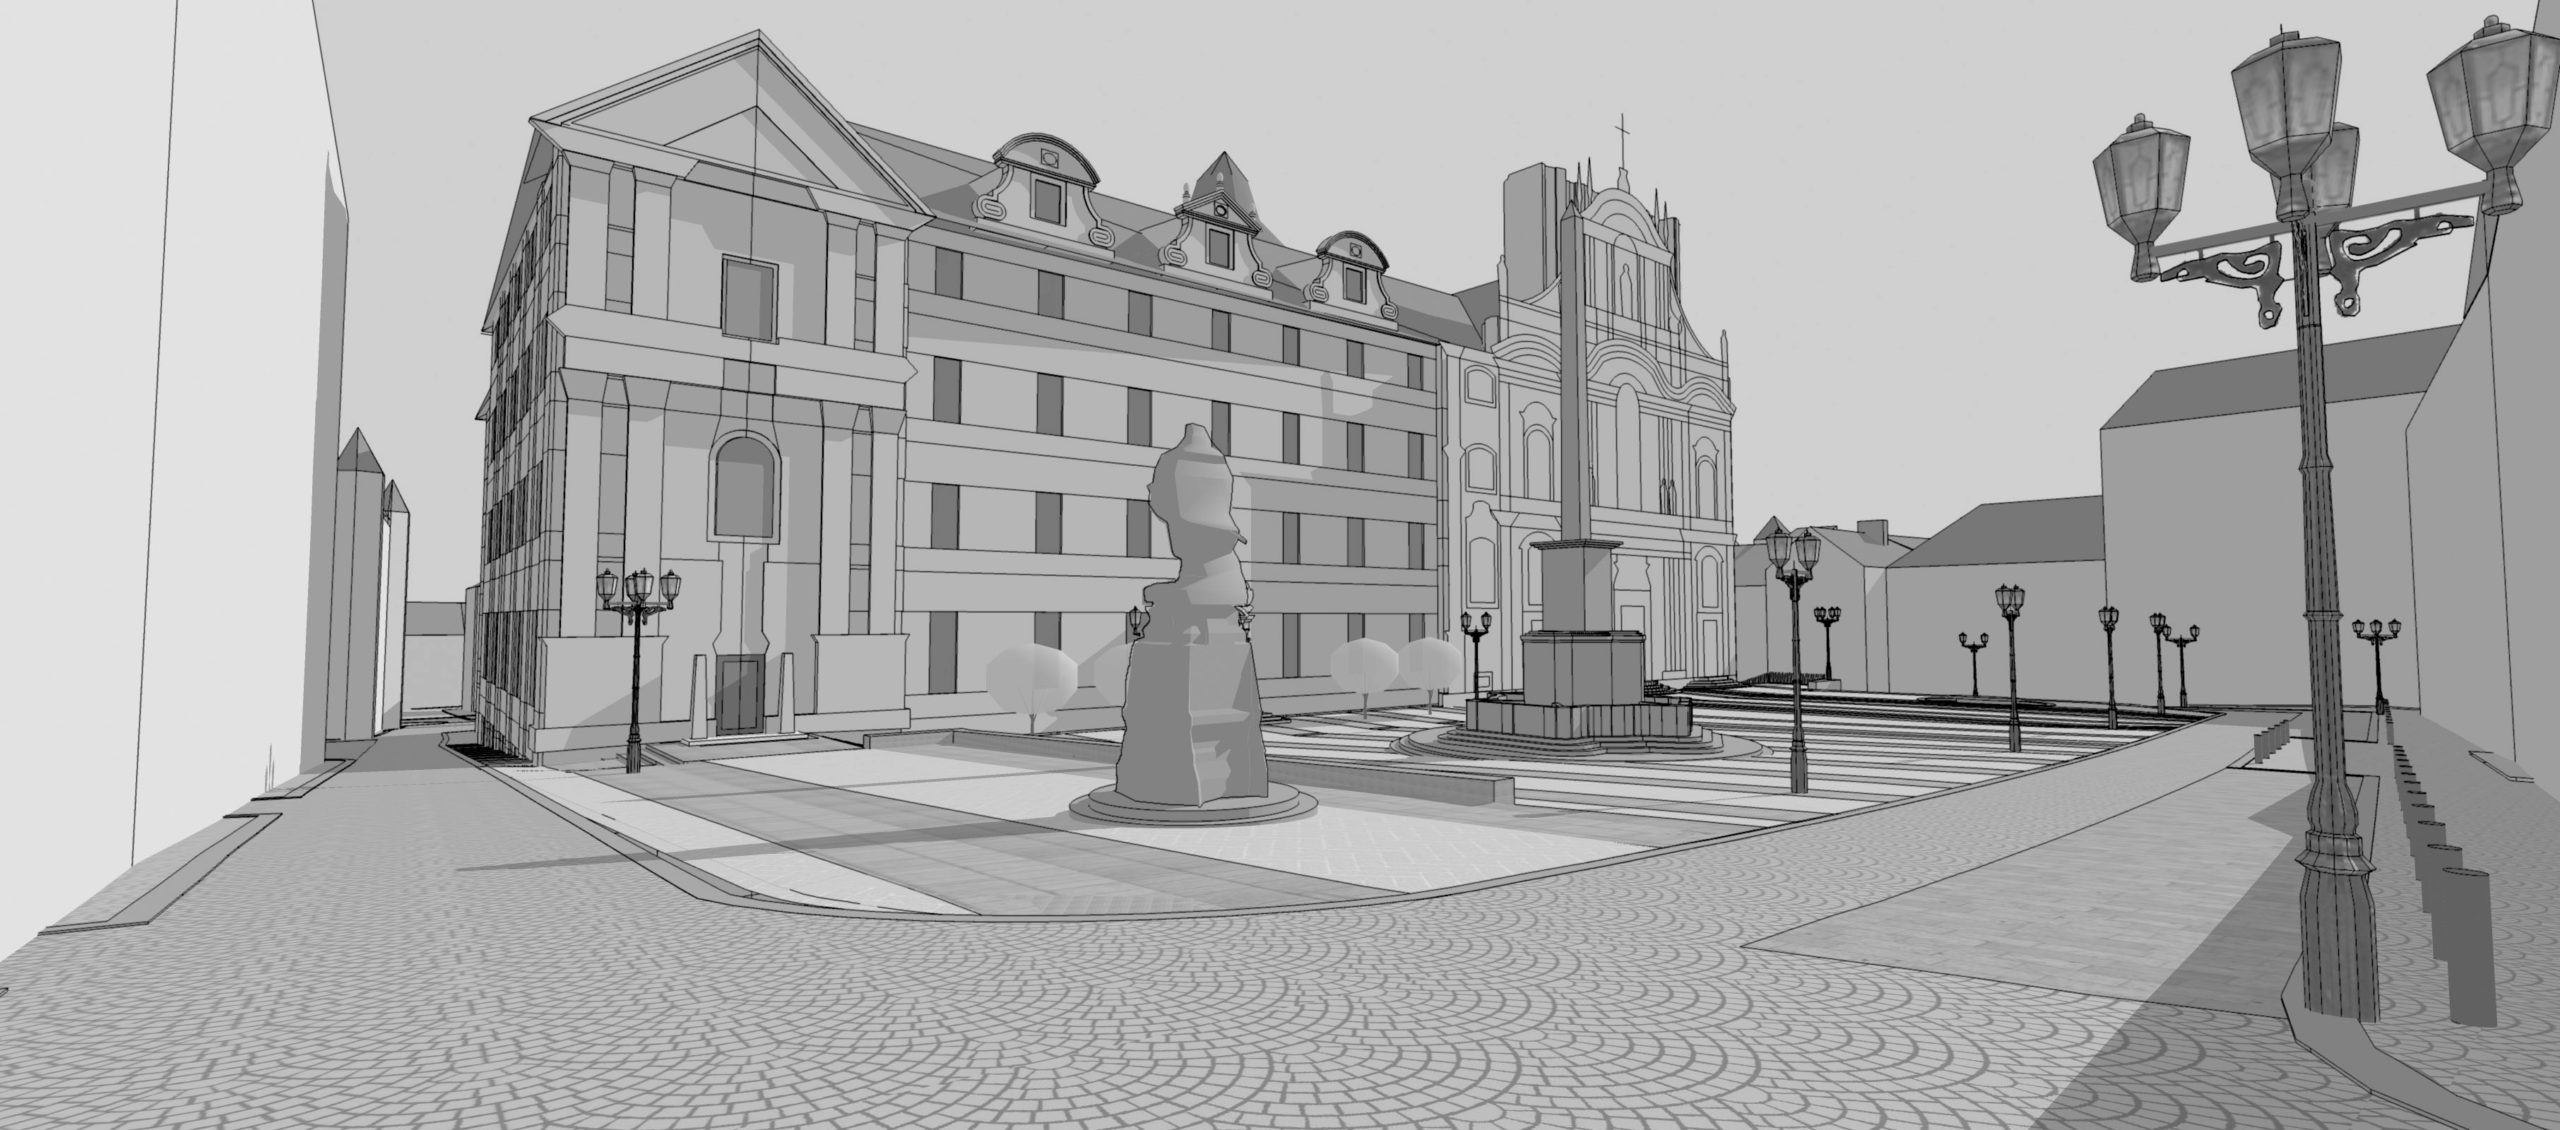 Soutěžní návrh revitalizace dolní a horní části Malostranského náměstí, Praha 1